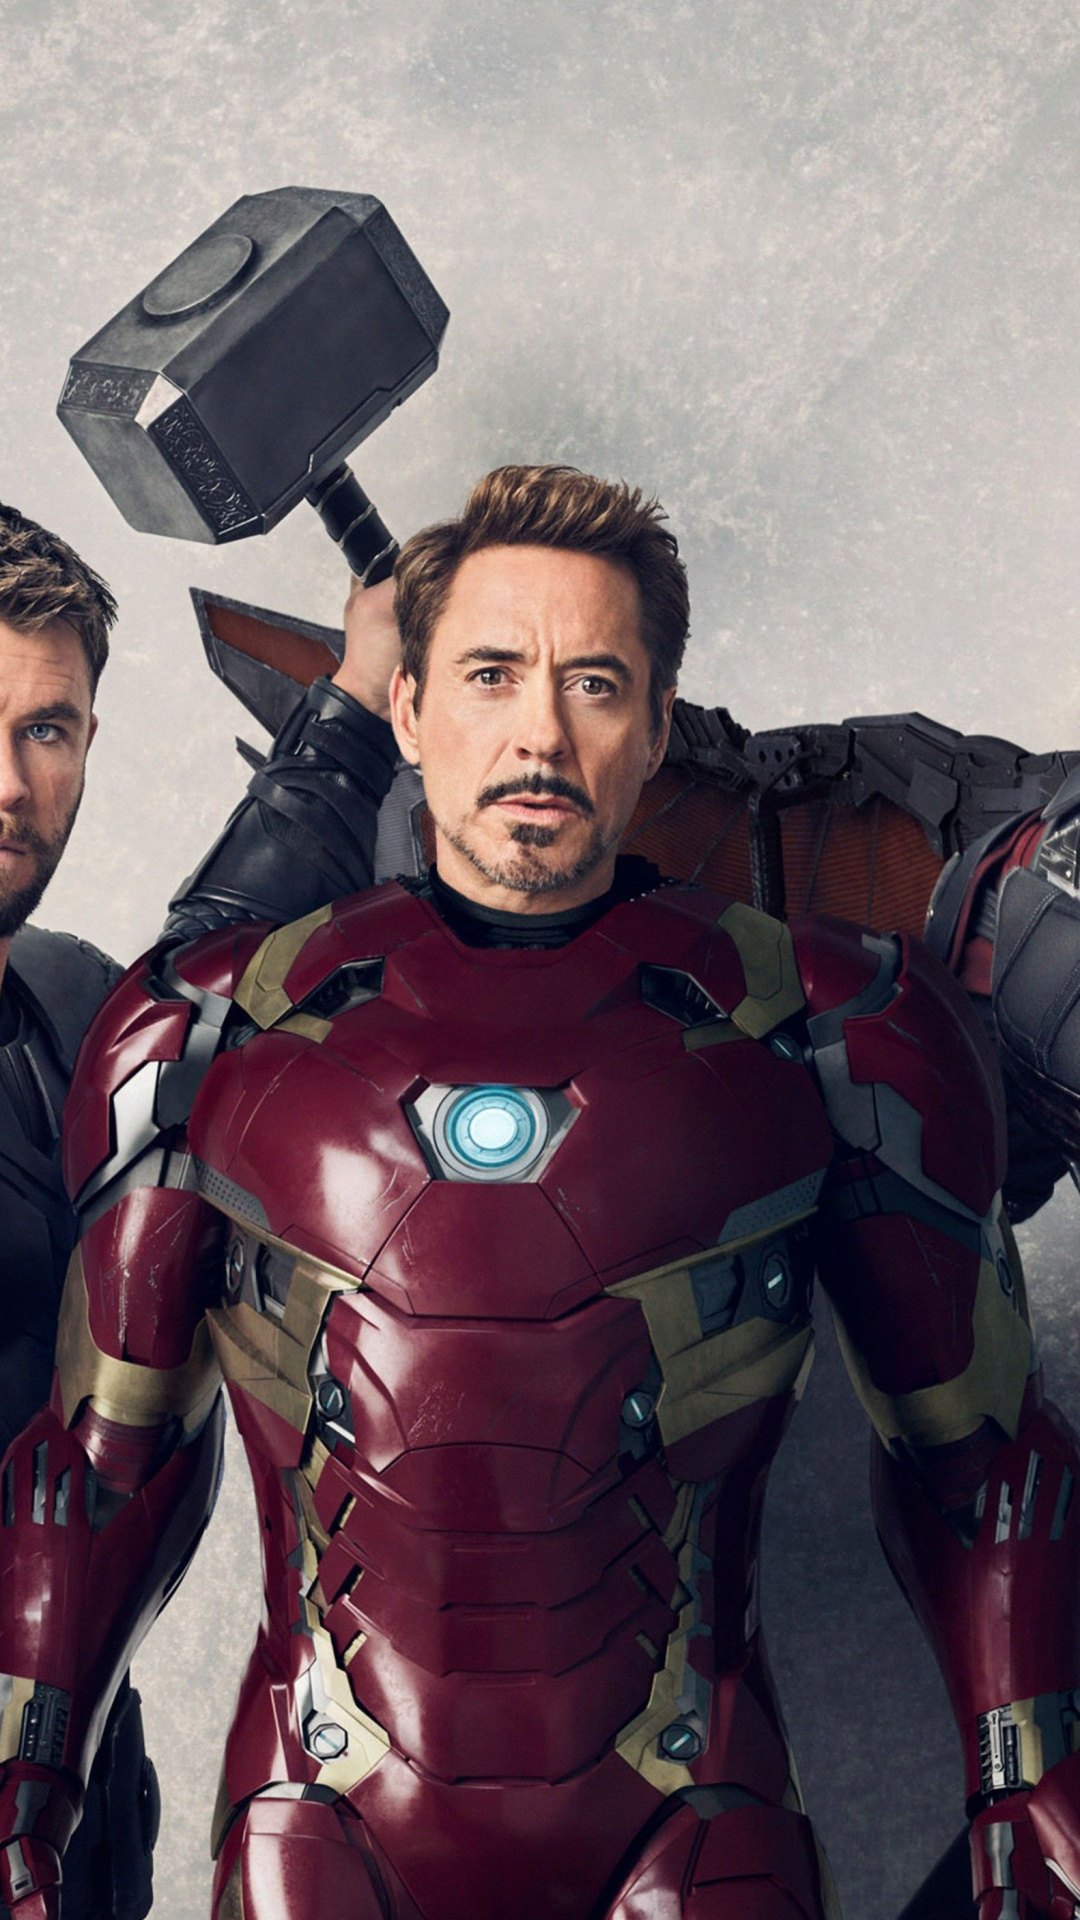 The Avengers, Superhero, Iron Man, Spider-man, Avengers - Iron Man Ultra Hd , HD Wallpaper & Backgrounds